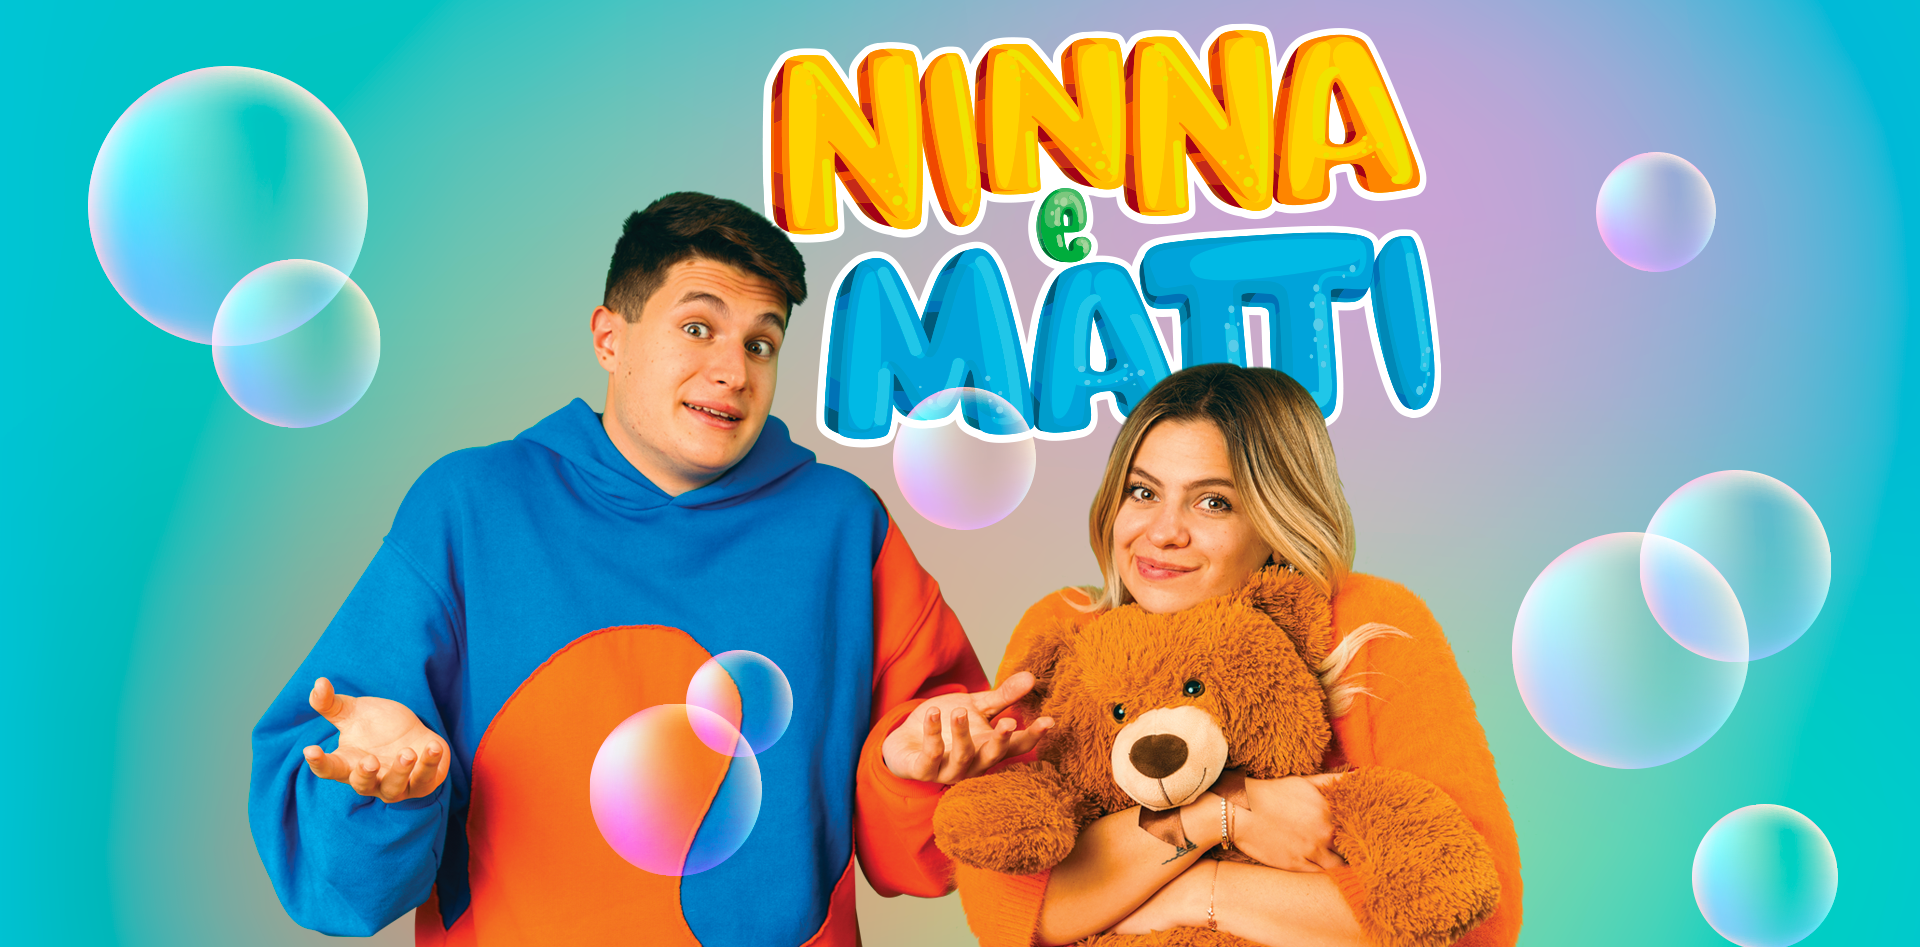 Home Page - Ninna e Matti